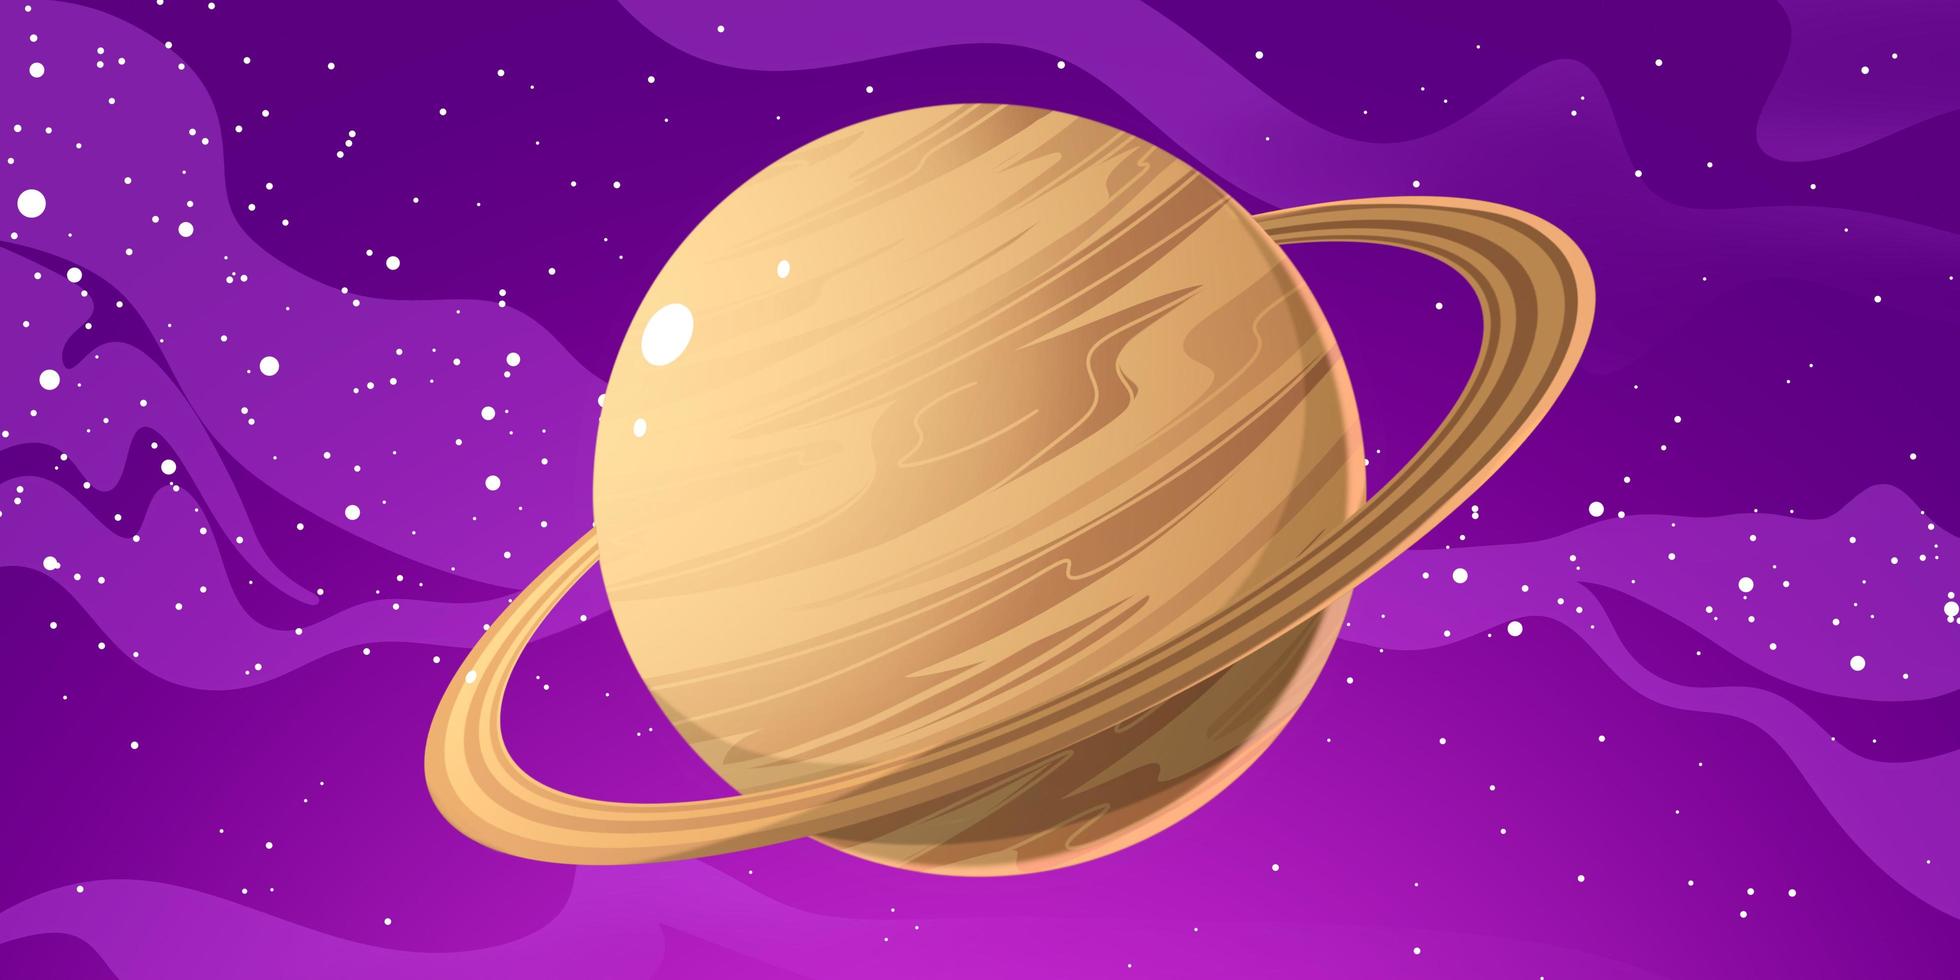 illustration de la planète saturne. Saturne est la deuxième plus grande planète après Jupiter dans le système solaire. saturne a un anneau magnifique alors saturne est si belle photo